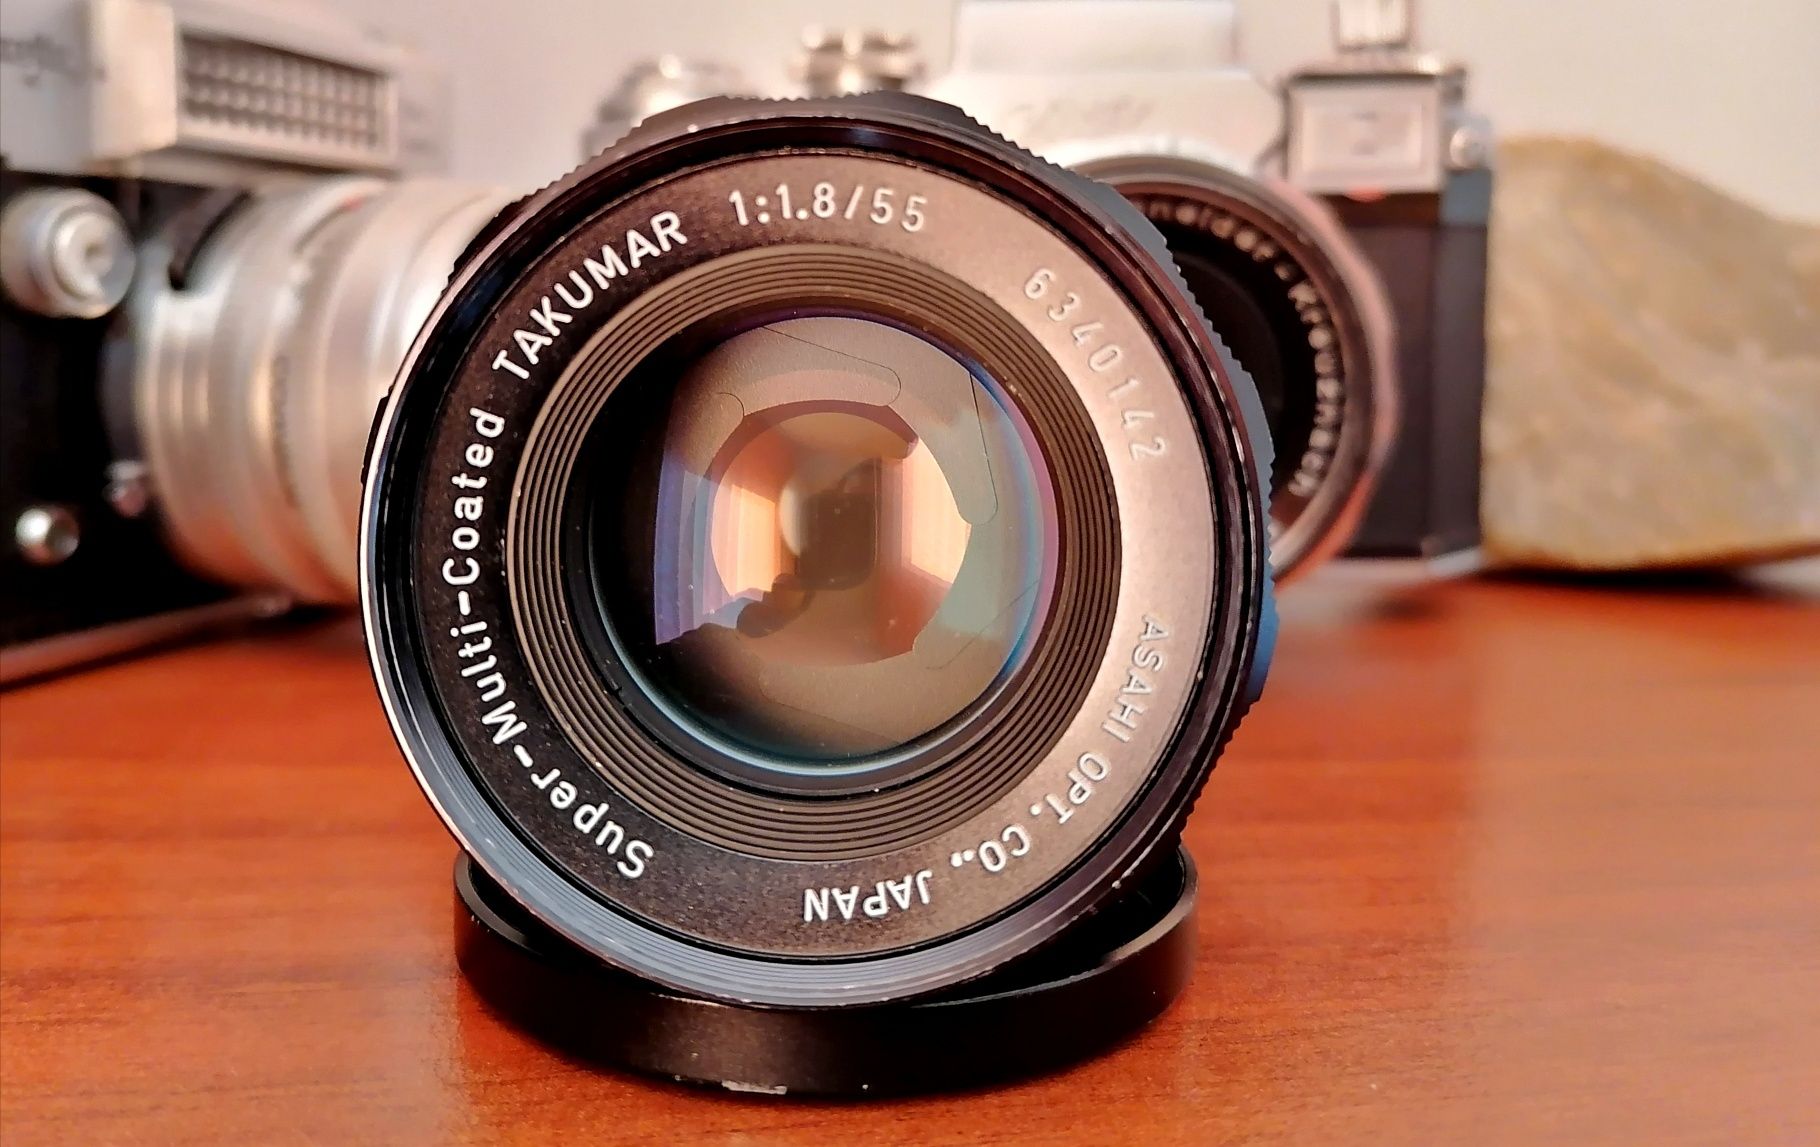 Obiectiv Takumar 1.8/55 m42 Sony Canon